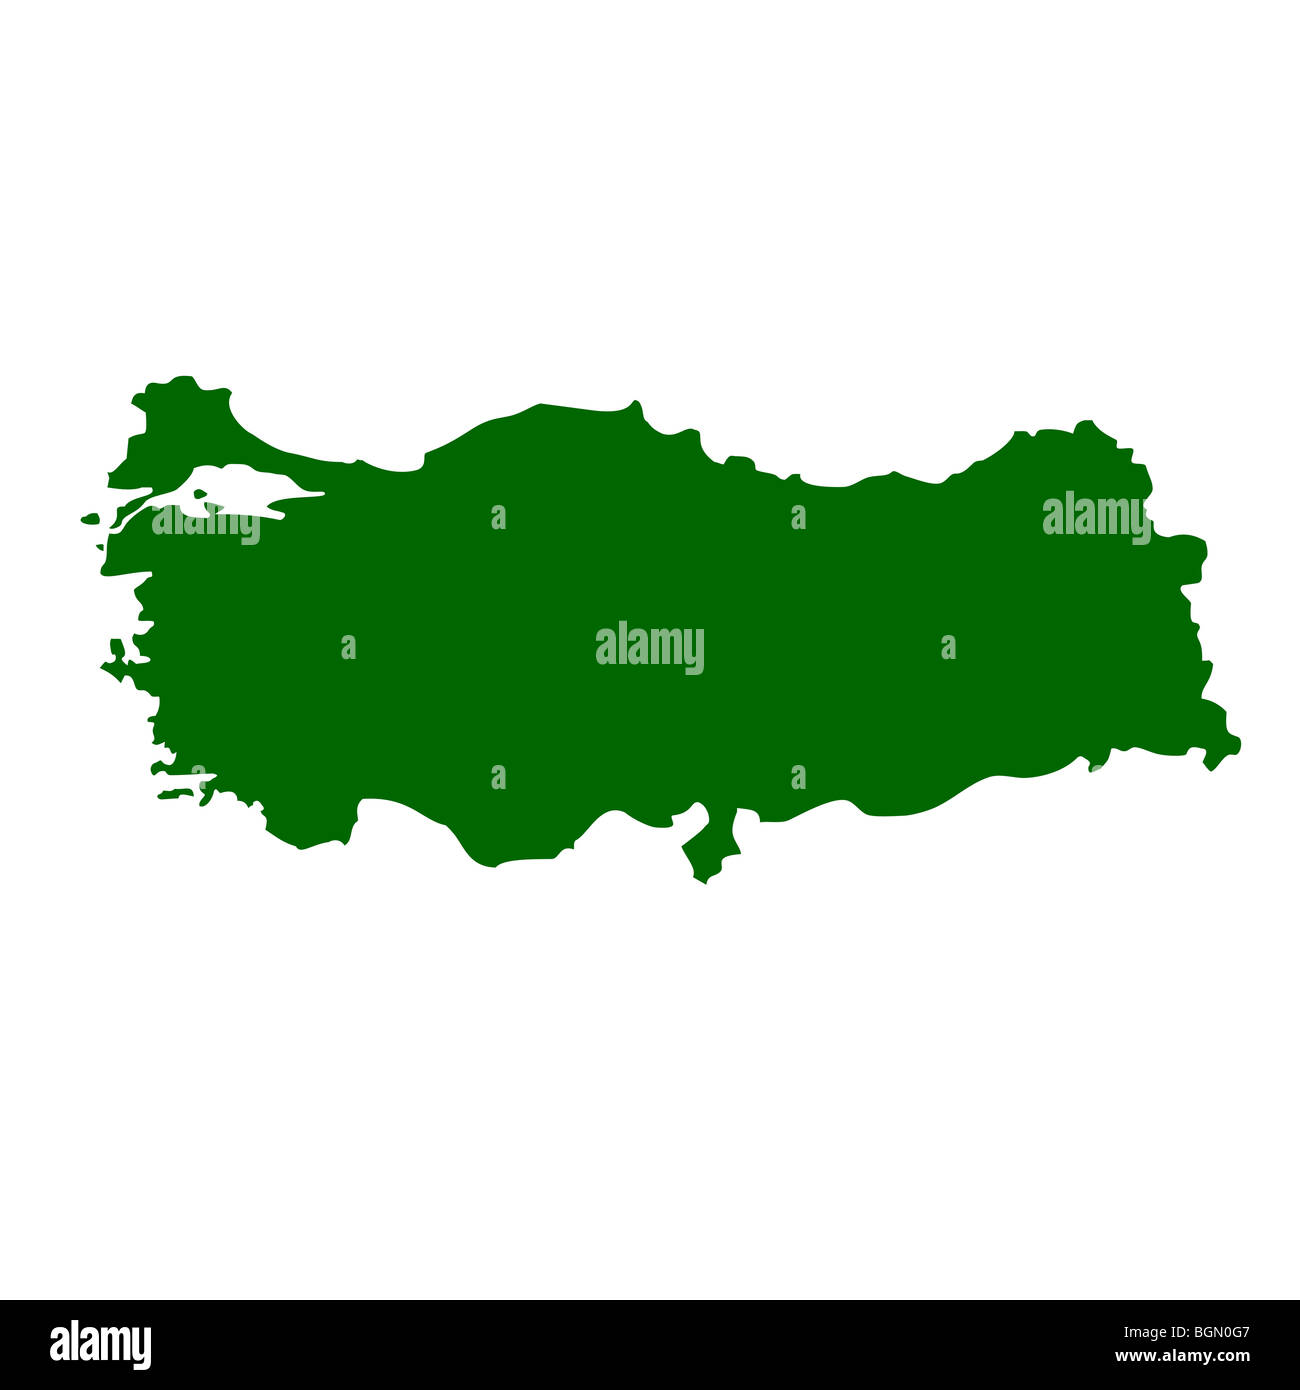 Turkey map isolated on white background. Stock Photo